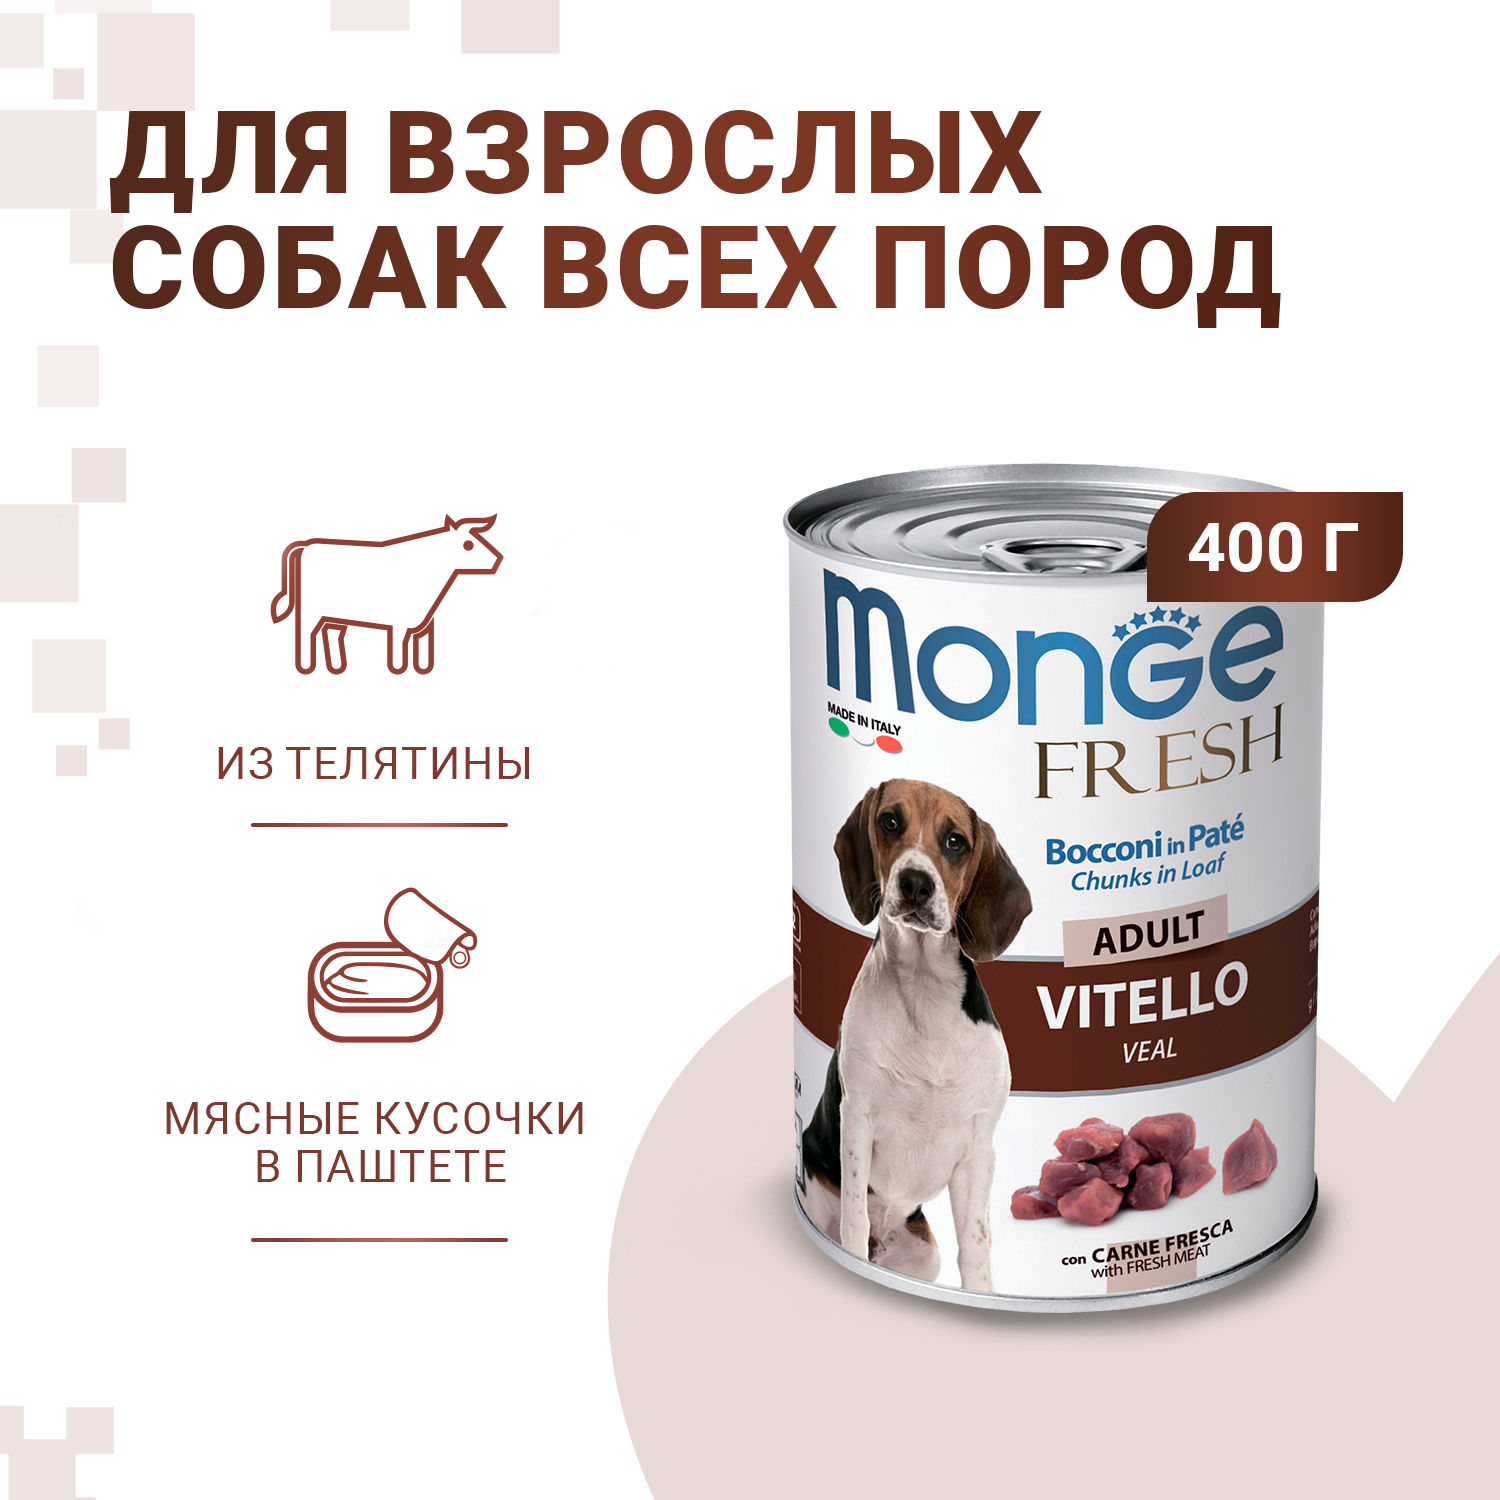 Влажный корм Monge Dog Fresh Chunks in Loaf для взрослых собак, мясной рулет из телятины, консервы 400 г